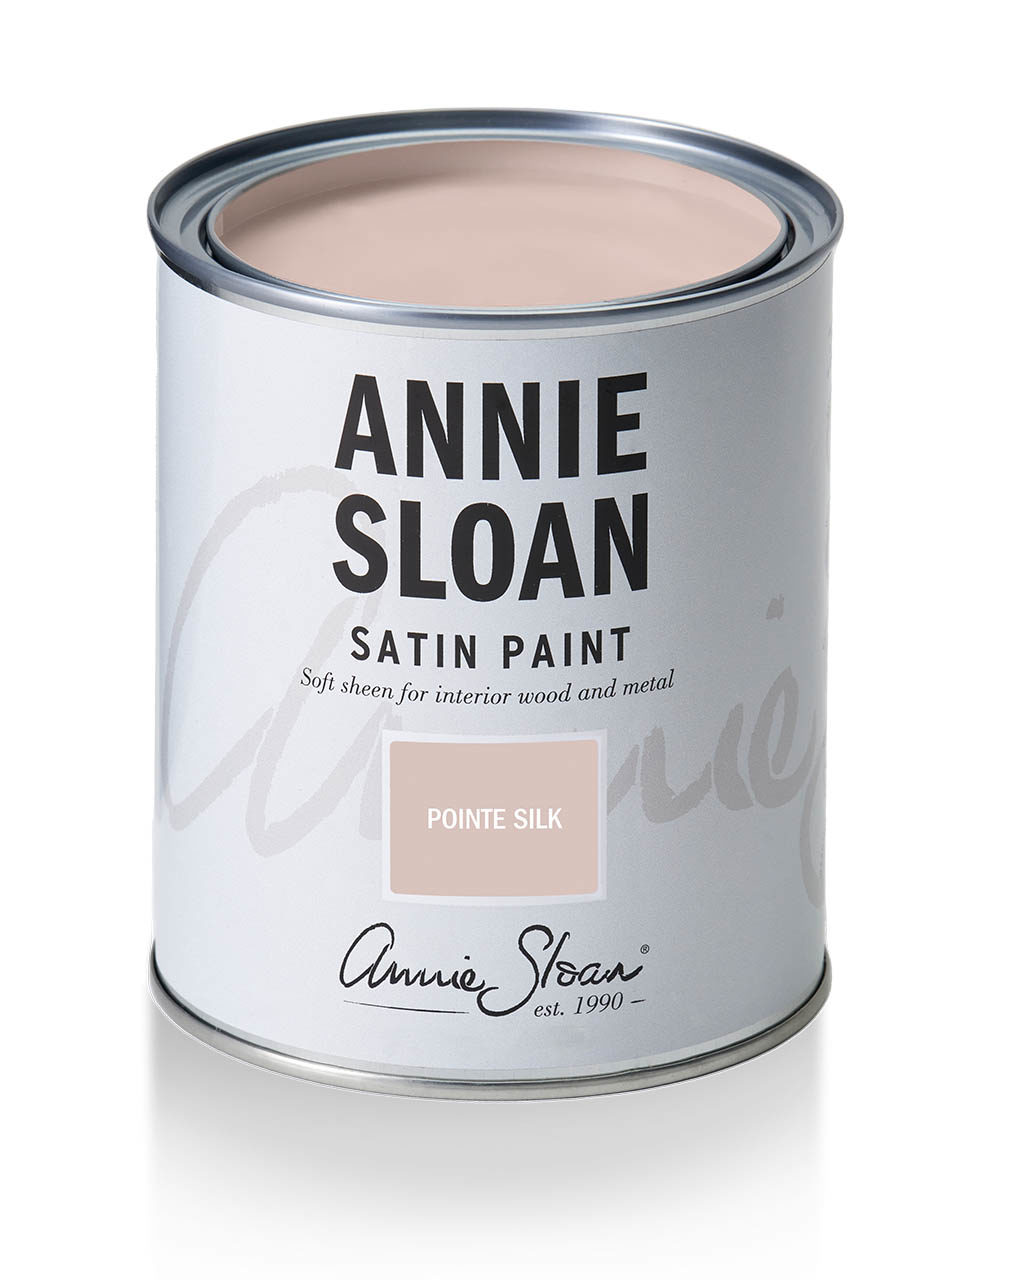 minerálna farba na nábytok satin paint farba ružová pointe silk annie sloan